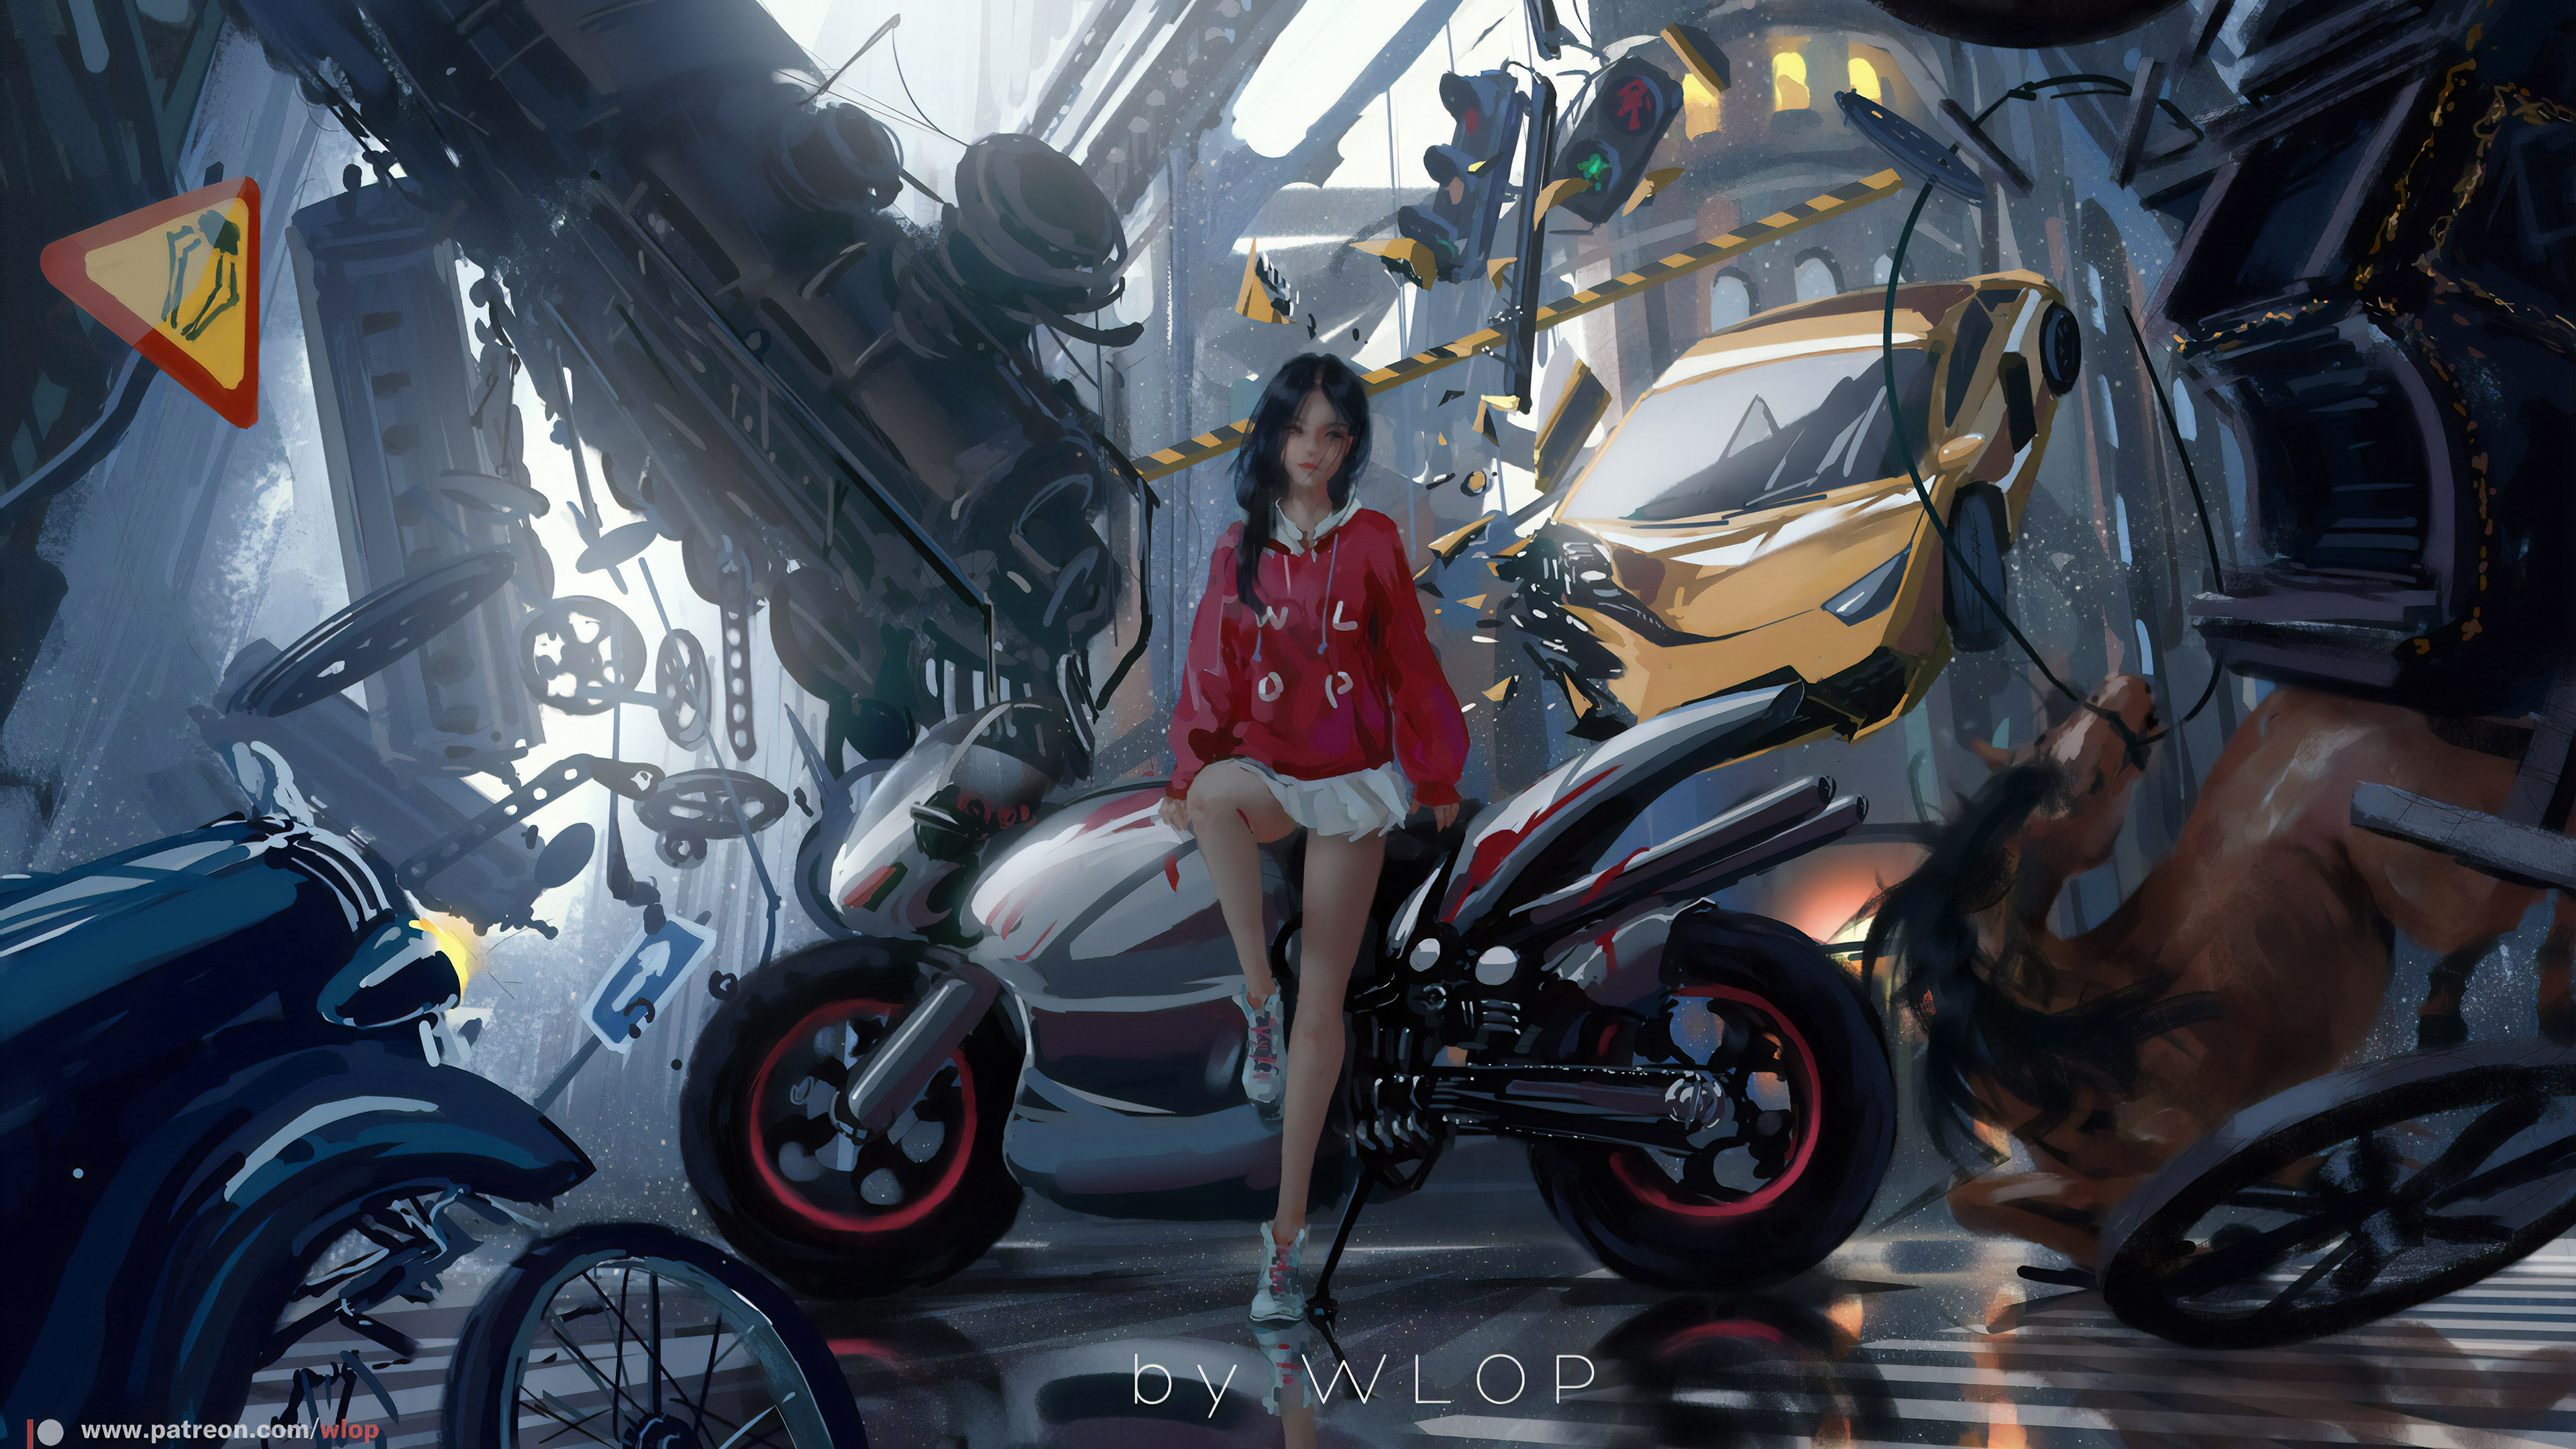 3840x2160 Anime Biker Girl 4k 4k Hd 4k Wallpapers Images